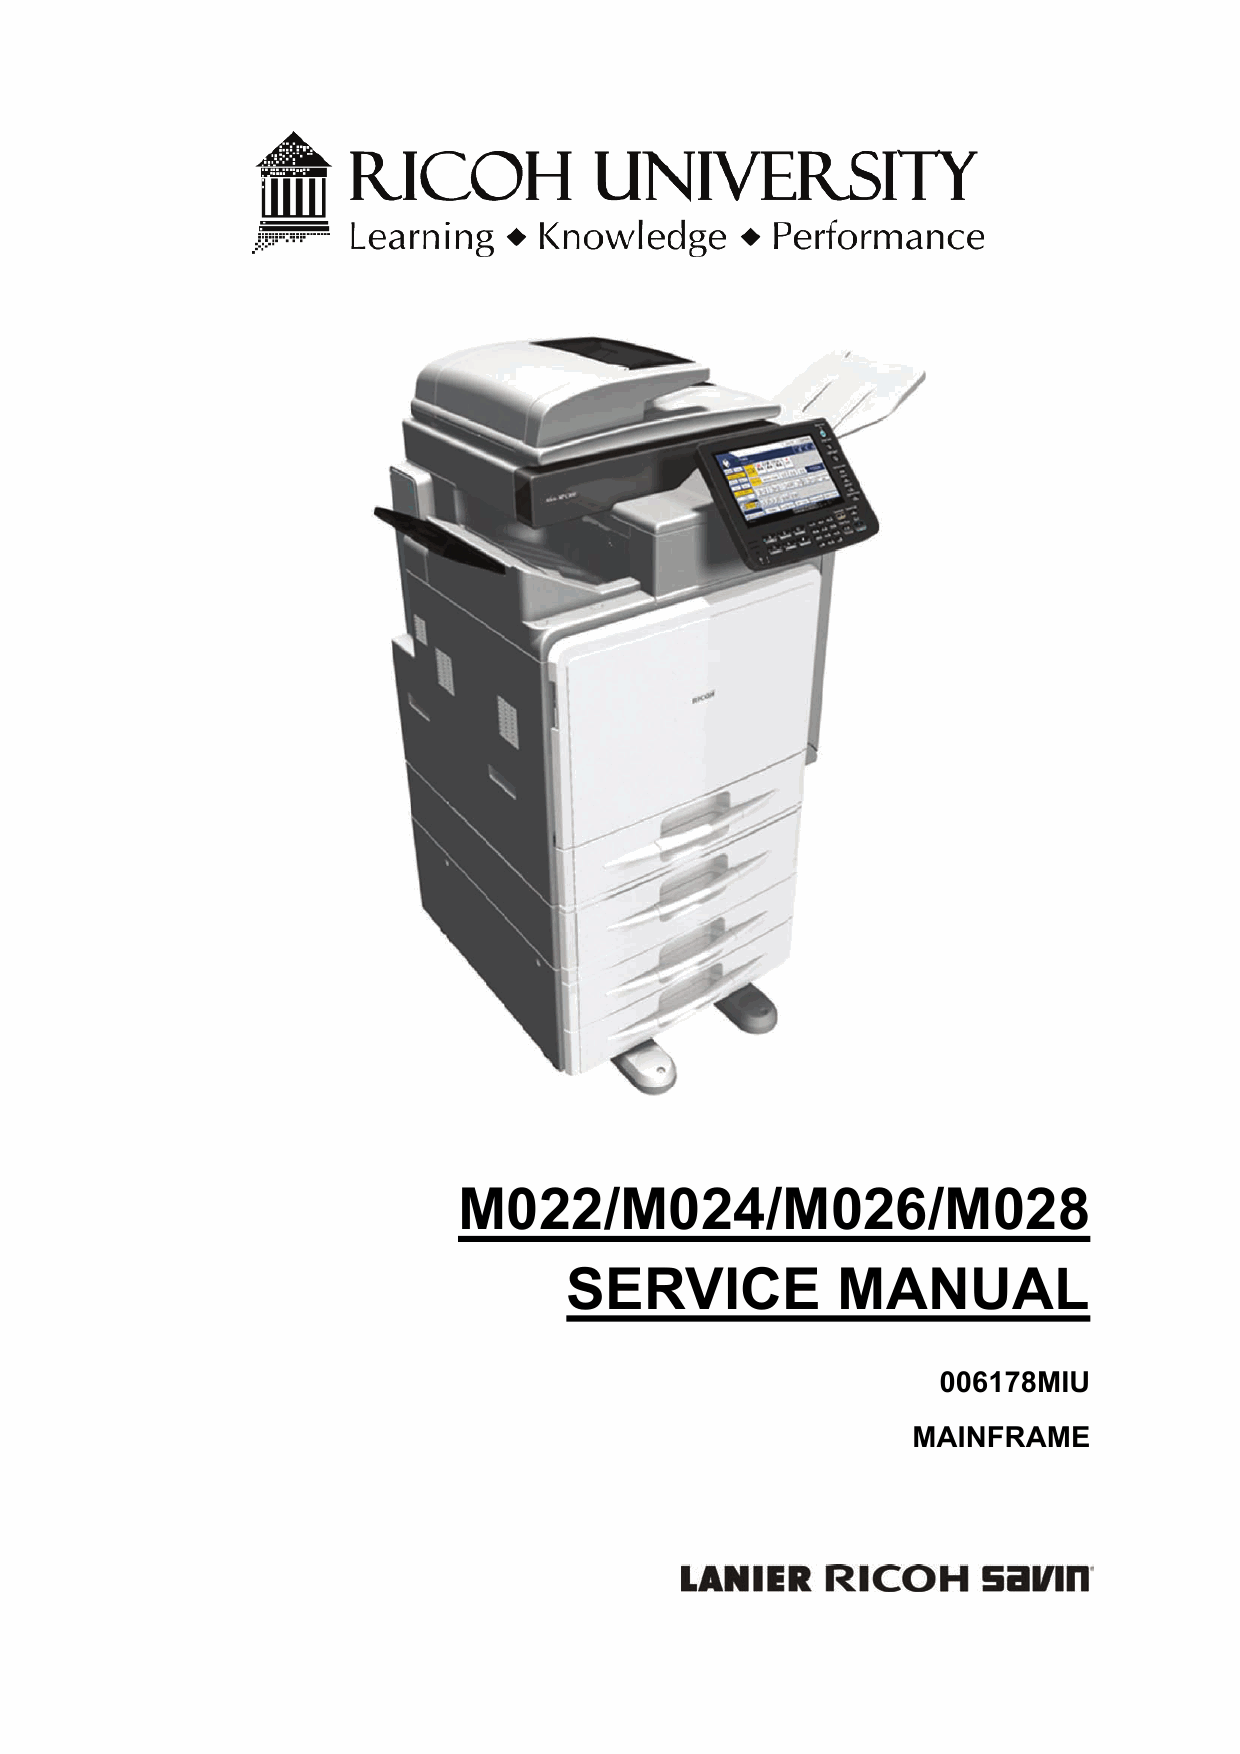 RICOH Aficio MP-C300 C300SR C400 C400SR M022 M024 M025 M026 Service Manual-1